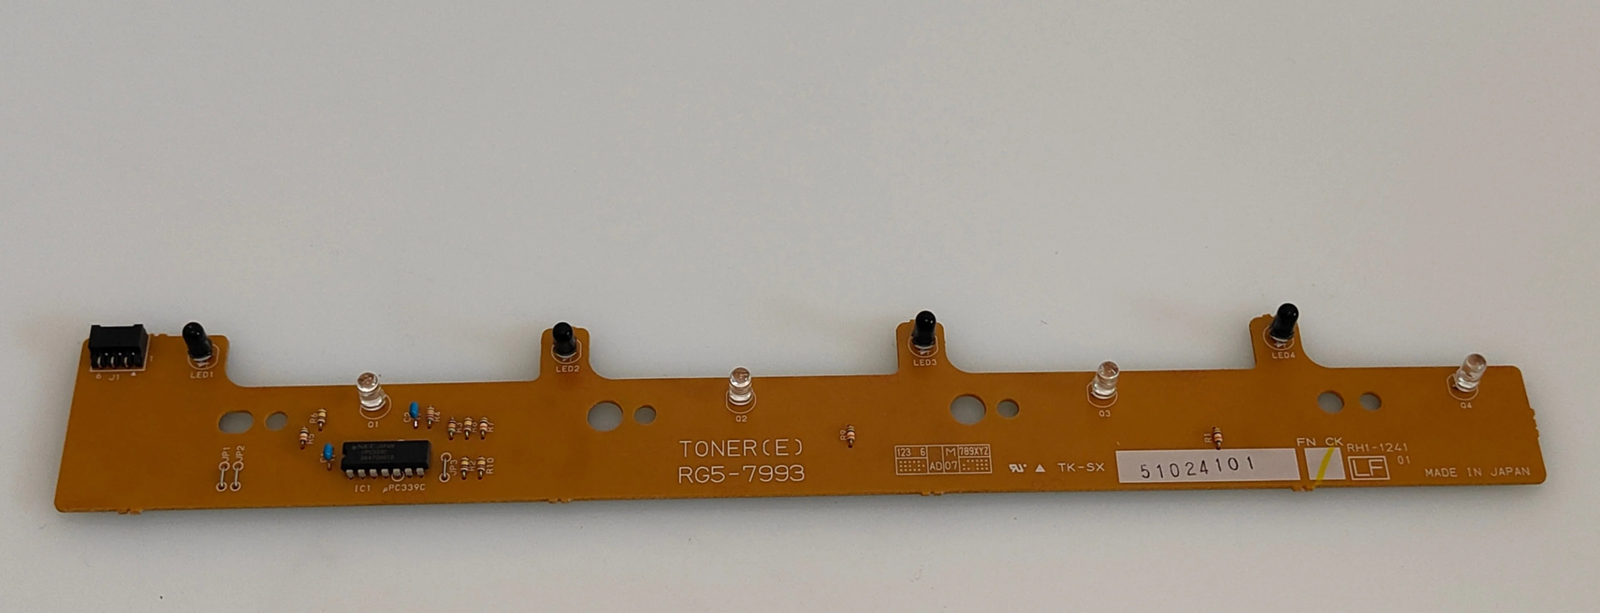 Toner Sensor PCB - RG5-7993 - HP Color LaserJet 5550n Product Q3714A